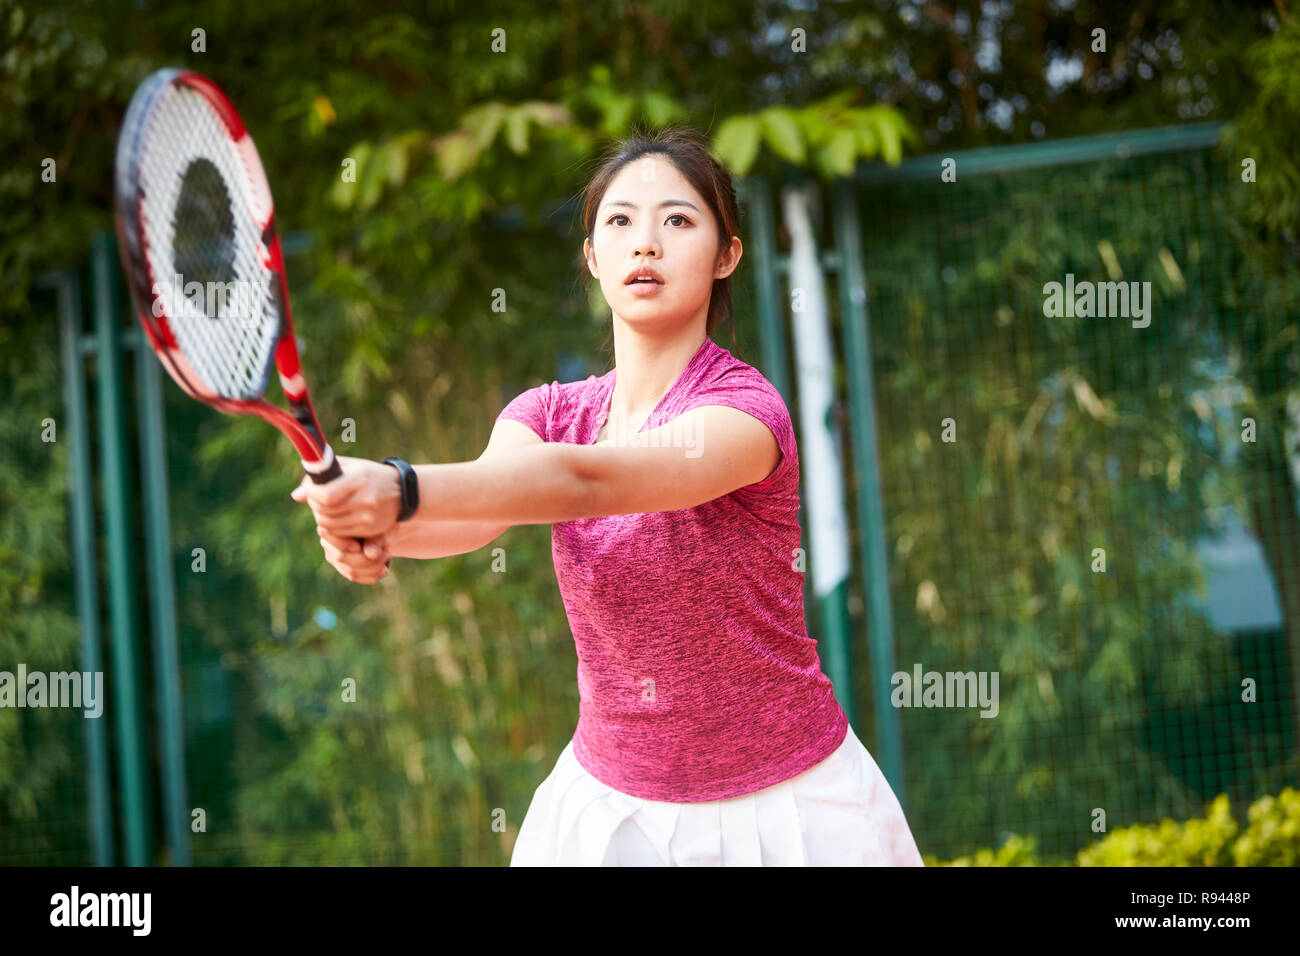 Junge asiatische Frau im Freien Tennis spielen. Stockfoto